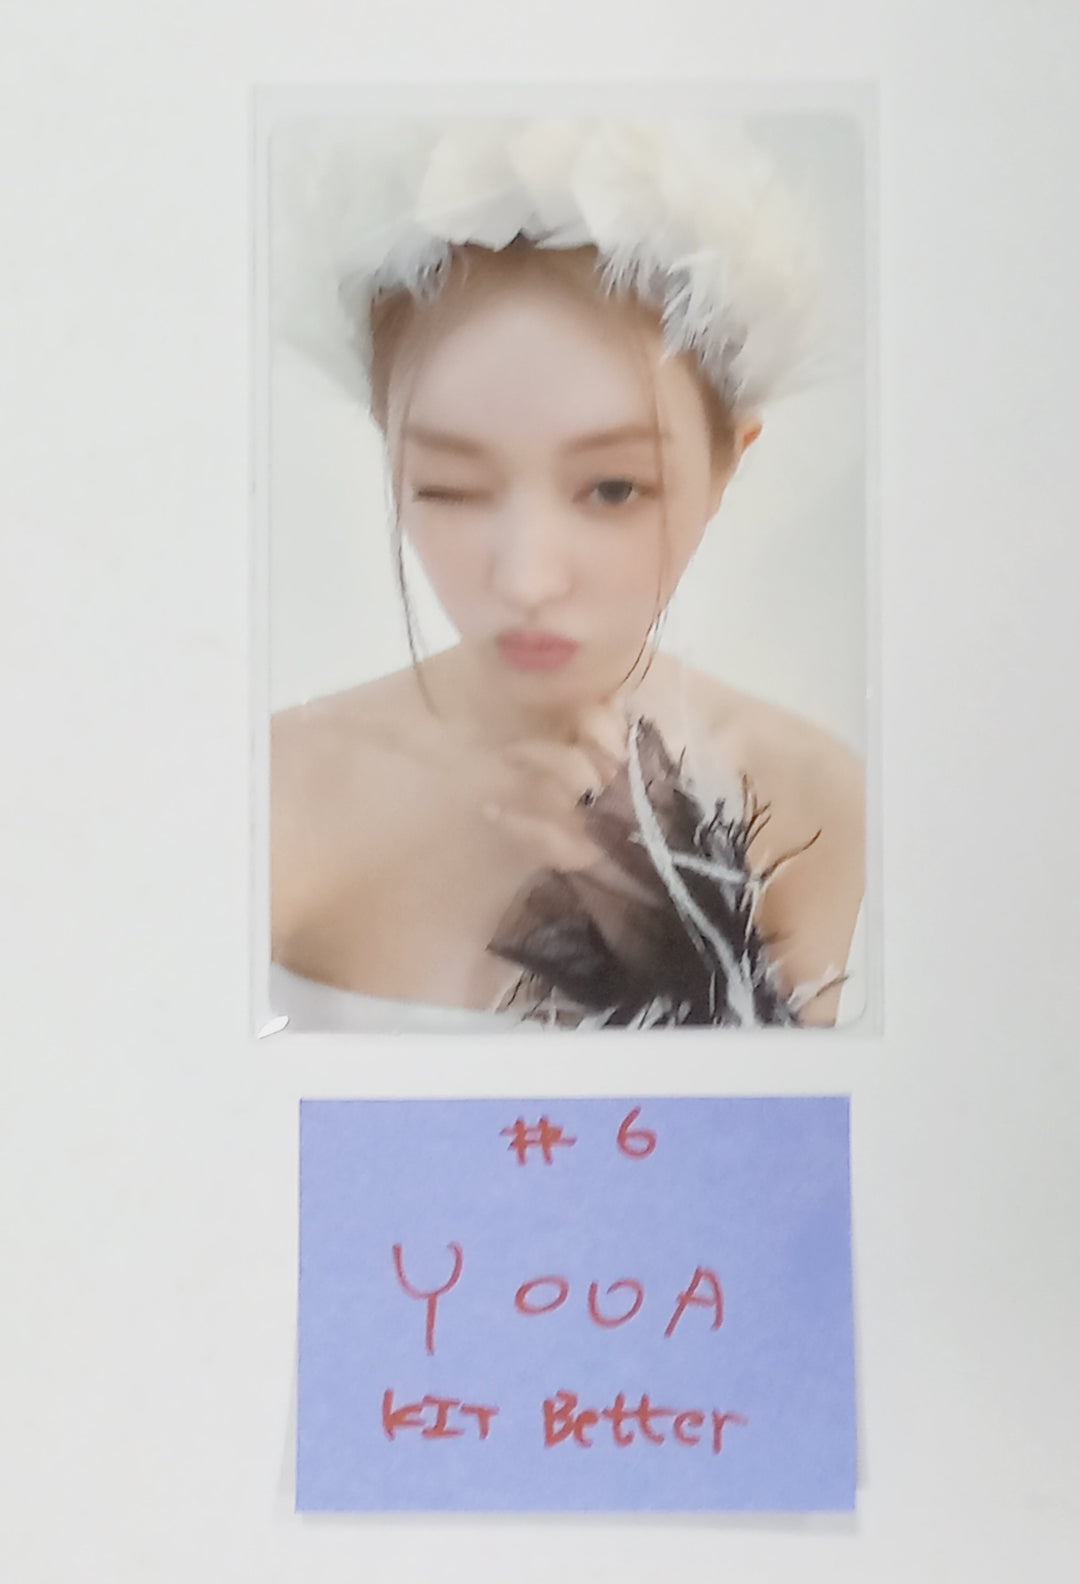 YOOA (Of Oh My Girl) "Borderline" - Kit Better ファンサインイベント フォトカード ラウンド 2 [Kit Ver.] [24.3.29]